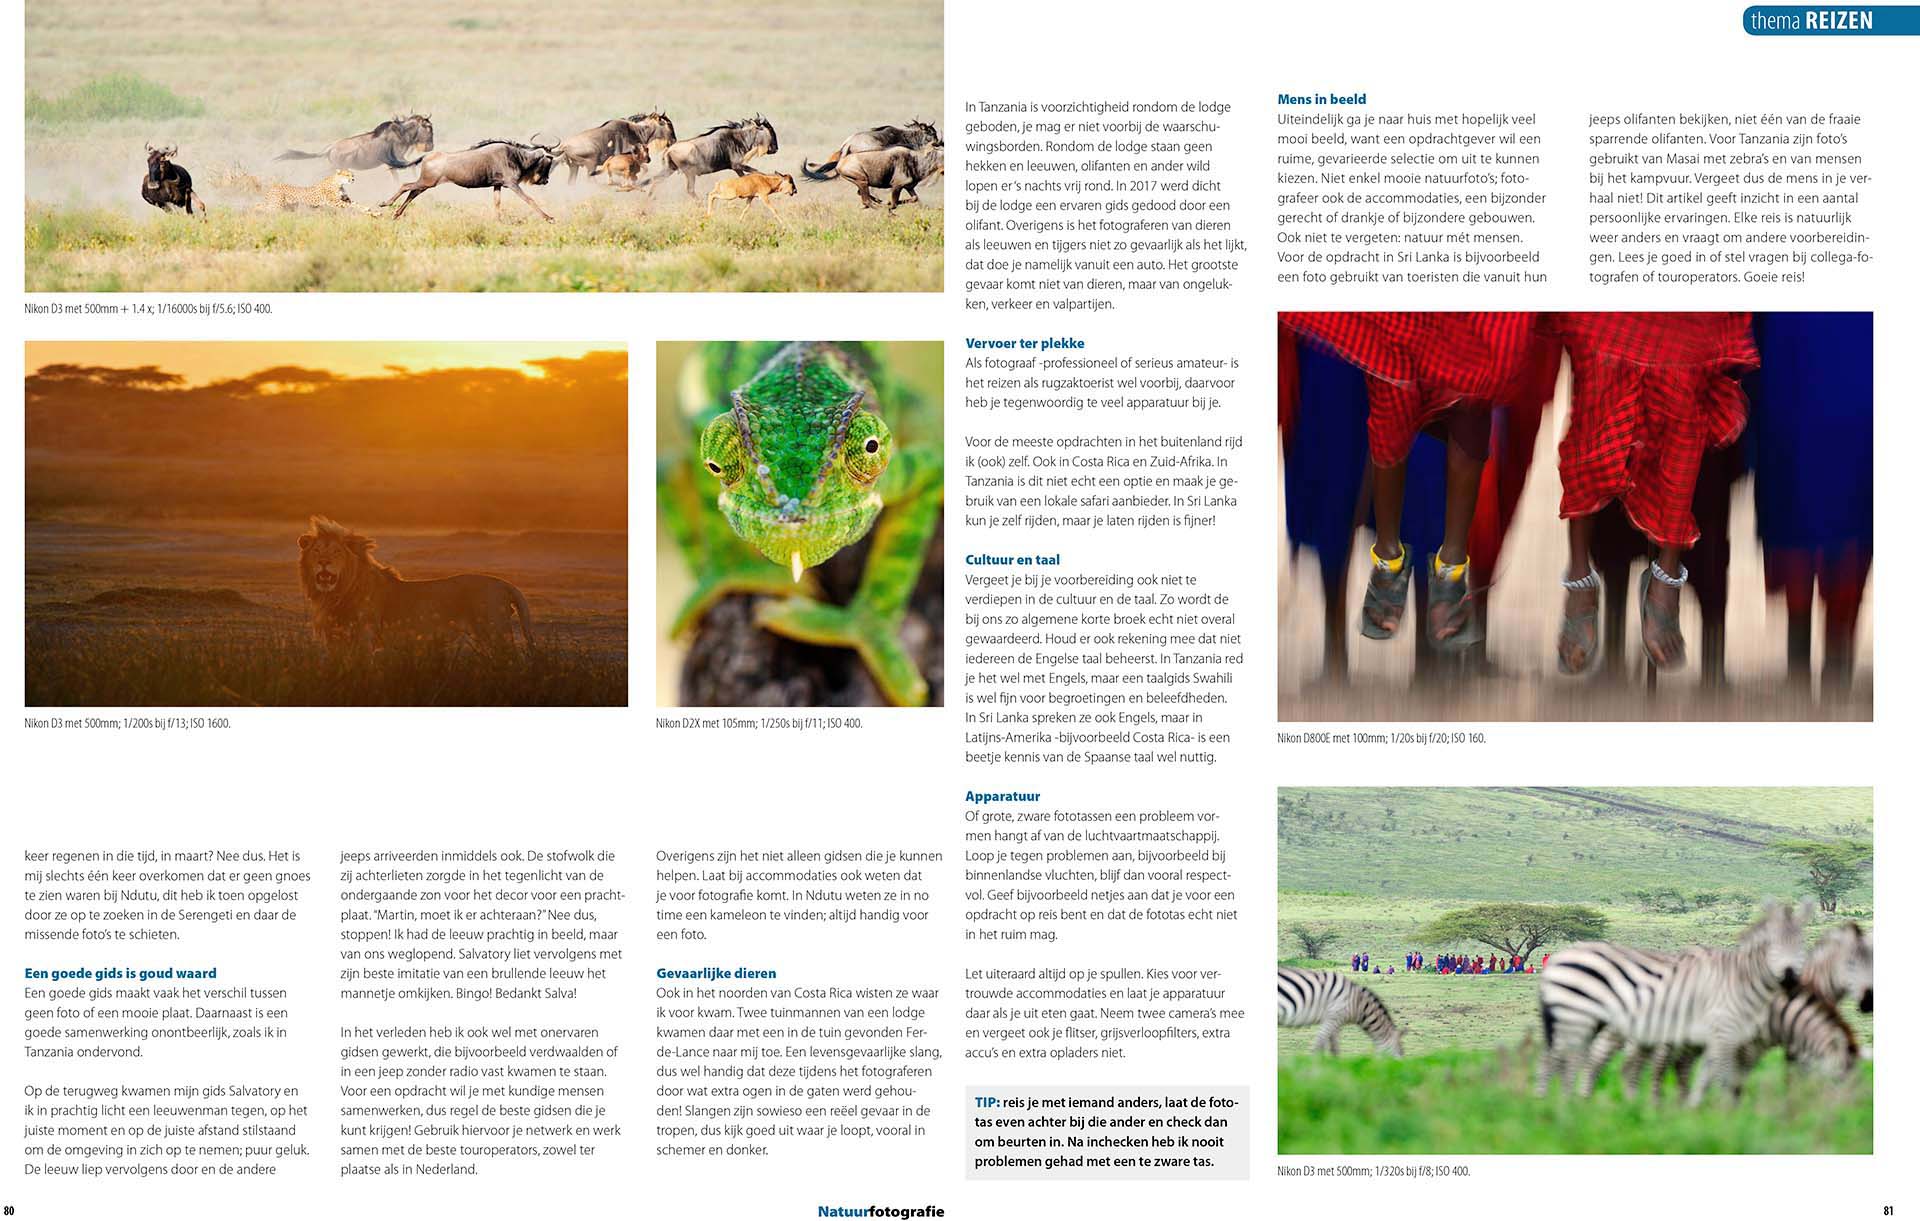 Publicatie over natuurfotografie op reis in Natuurfotografie Magazine, tekst en fotografie Martin van Lokven.